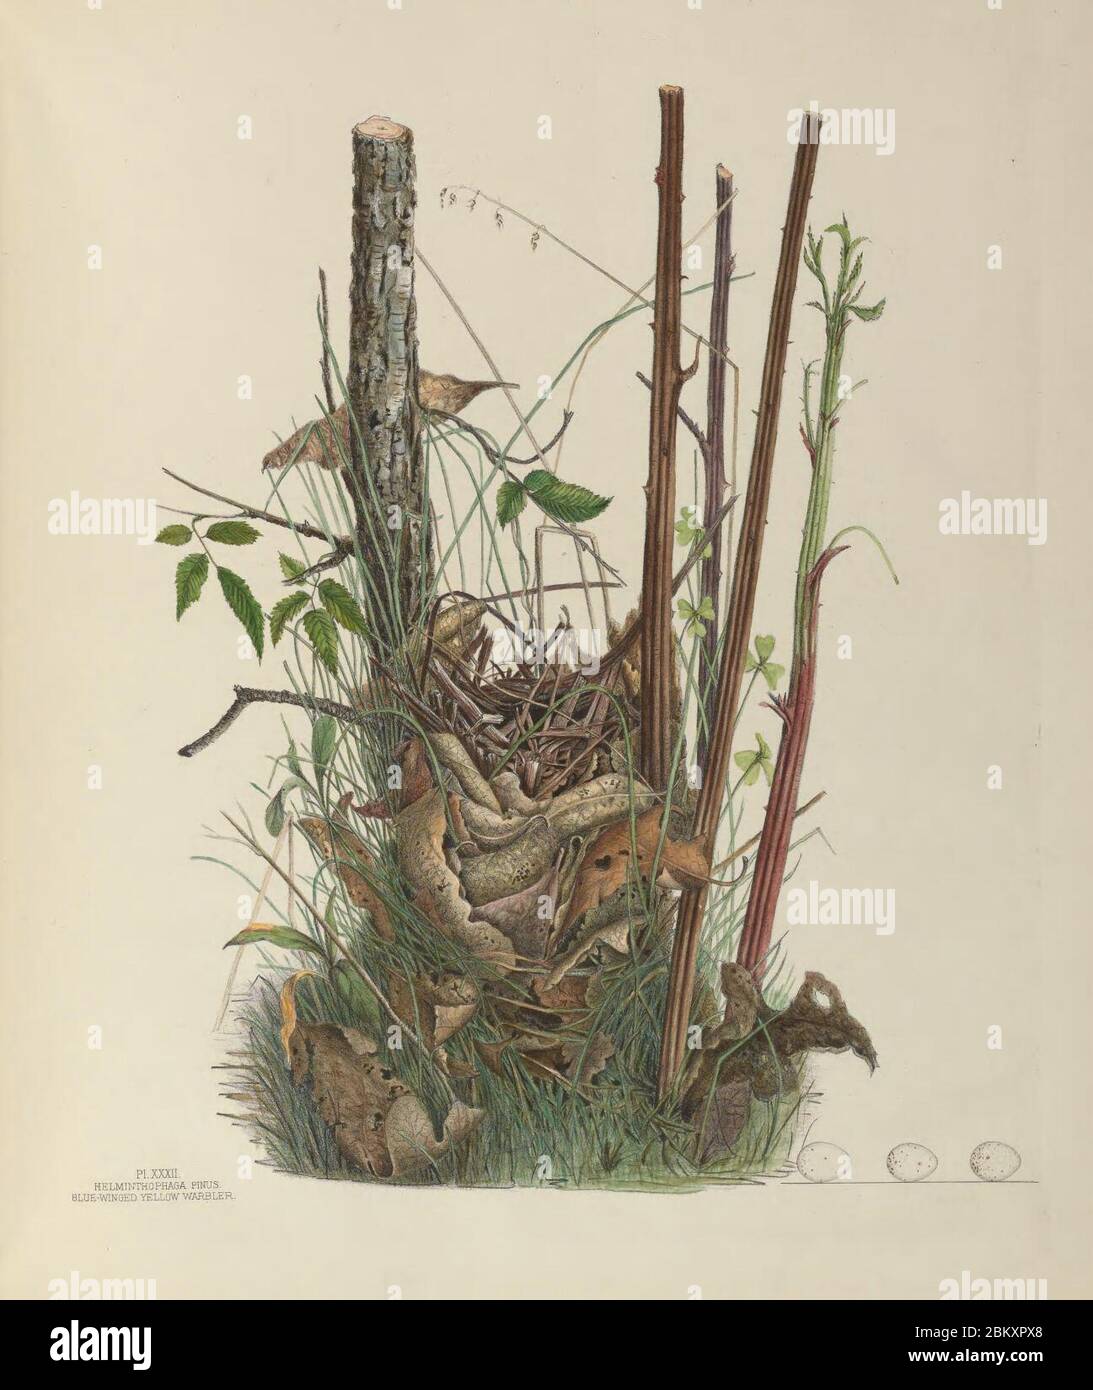 Illustrationen der Nester und Eier von Vögeln aus Ohio (Pl. XXXII) Stockfoto